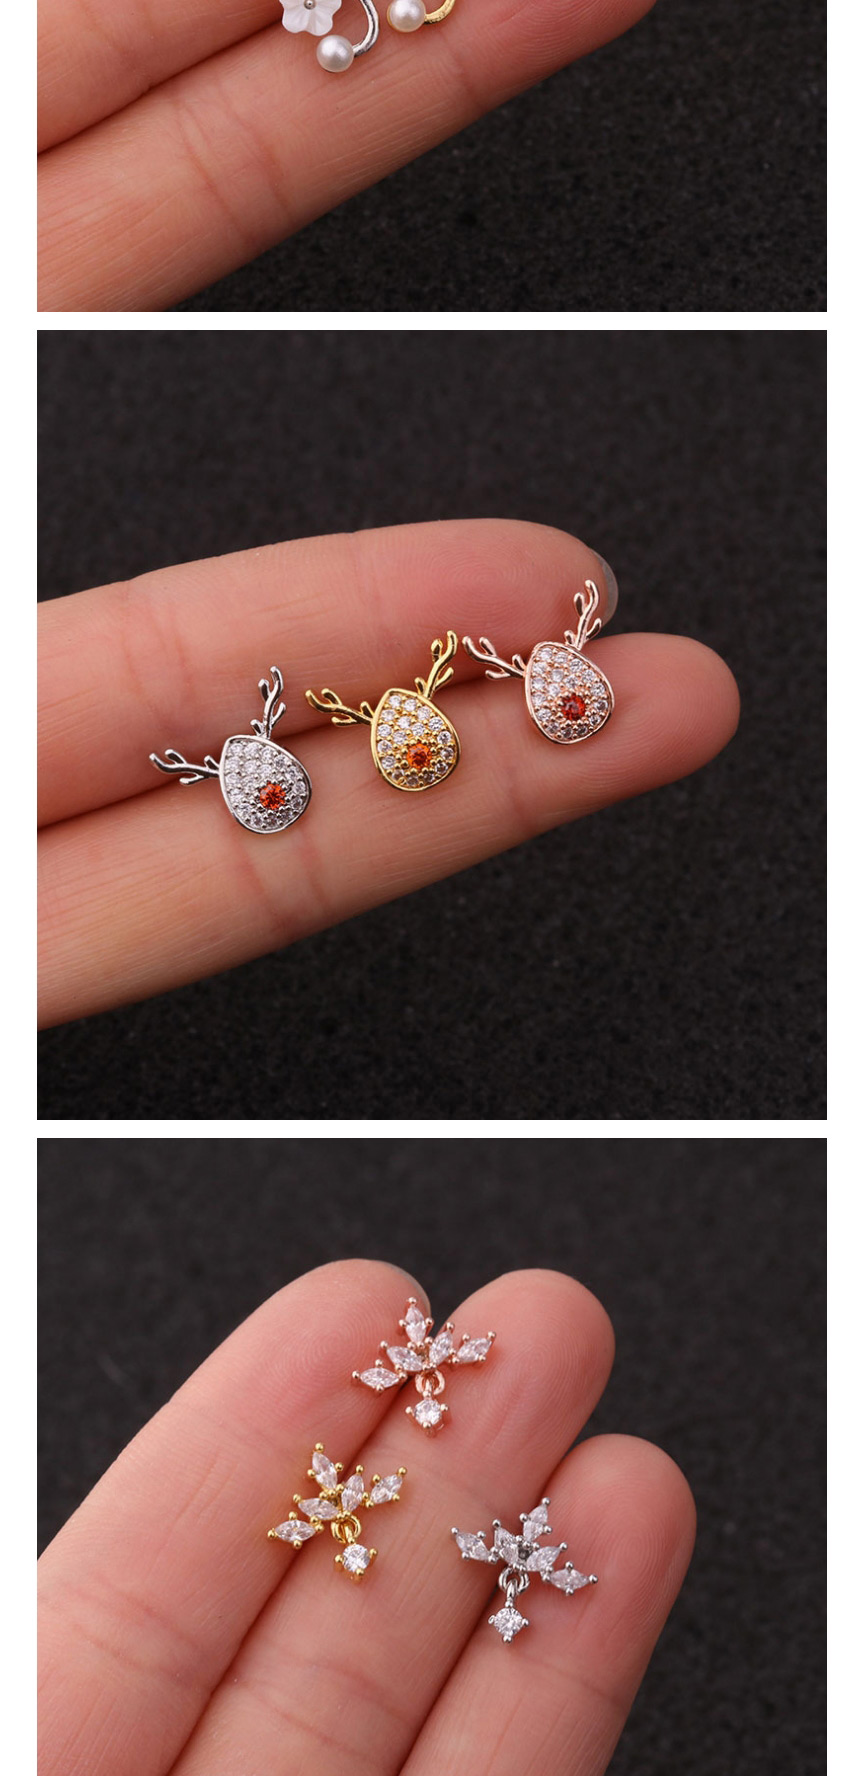 Fashion 5# Rose Gold Stainless Steel Piercing Jewelry Zircon Earrings Female Flower Ear Bone Nails (1pcs),Ear Cartilage Rings & Studs